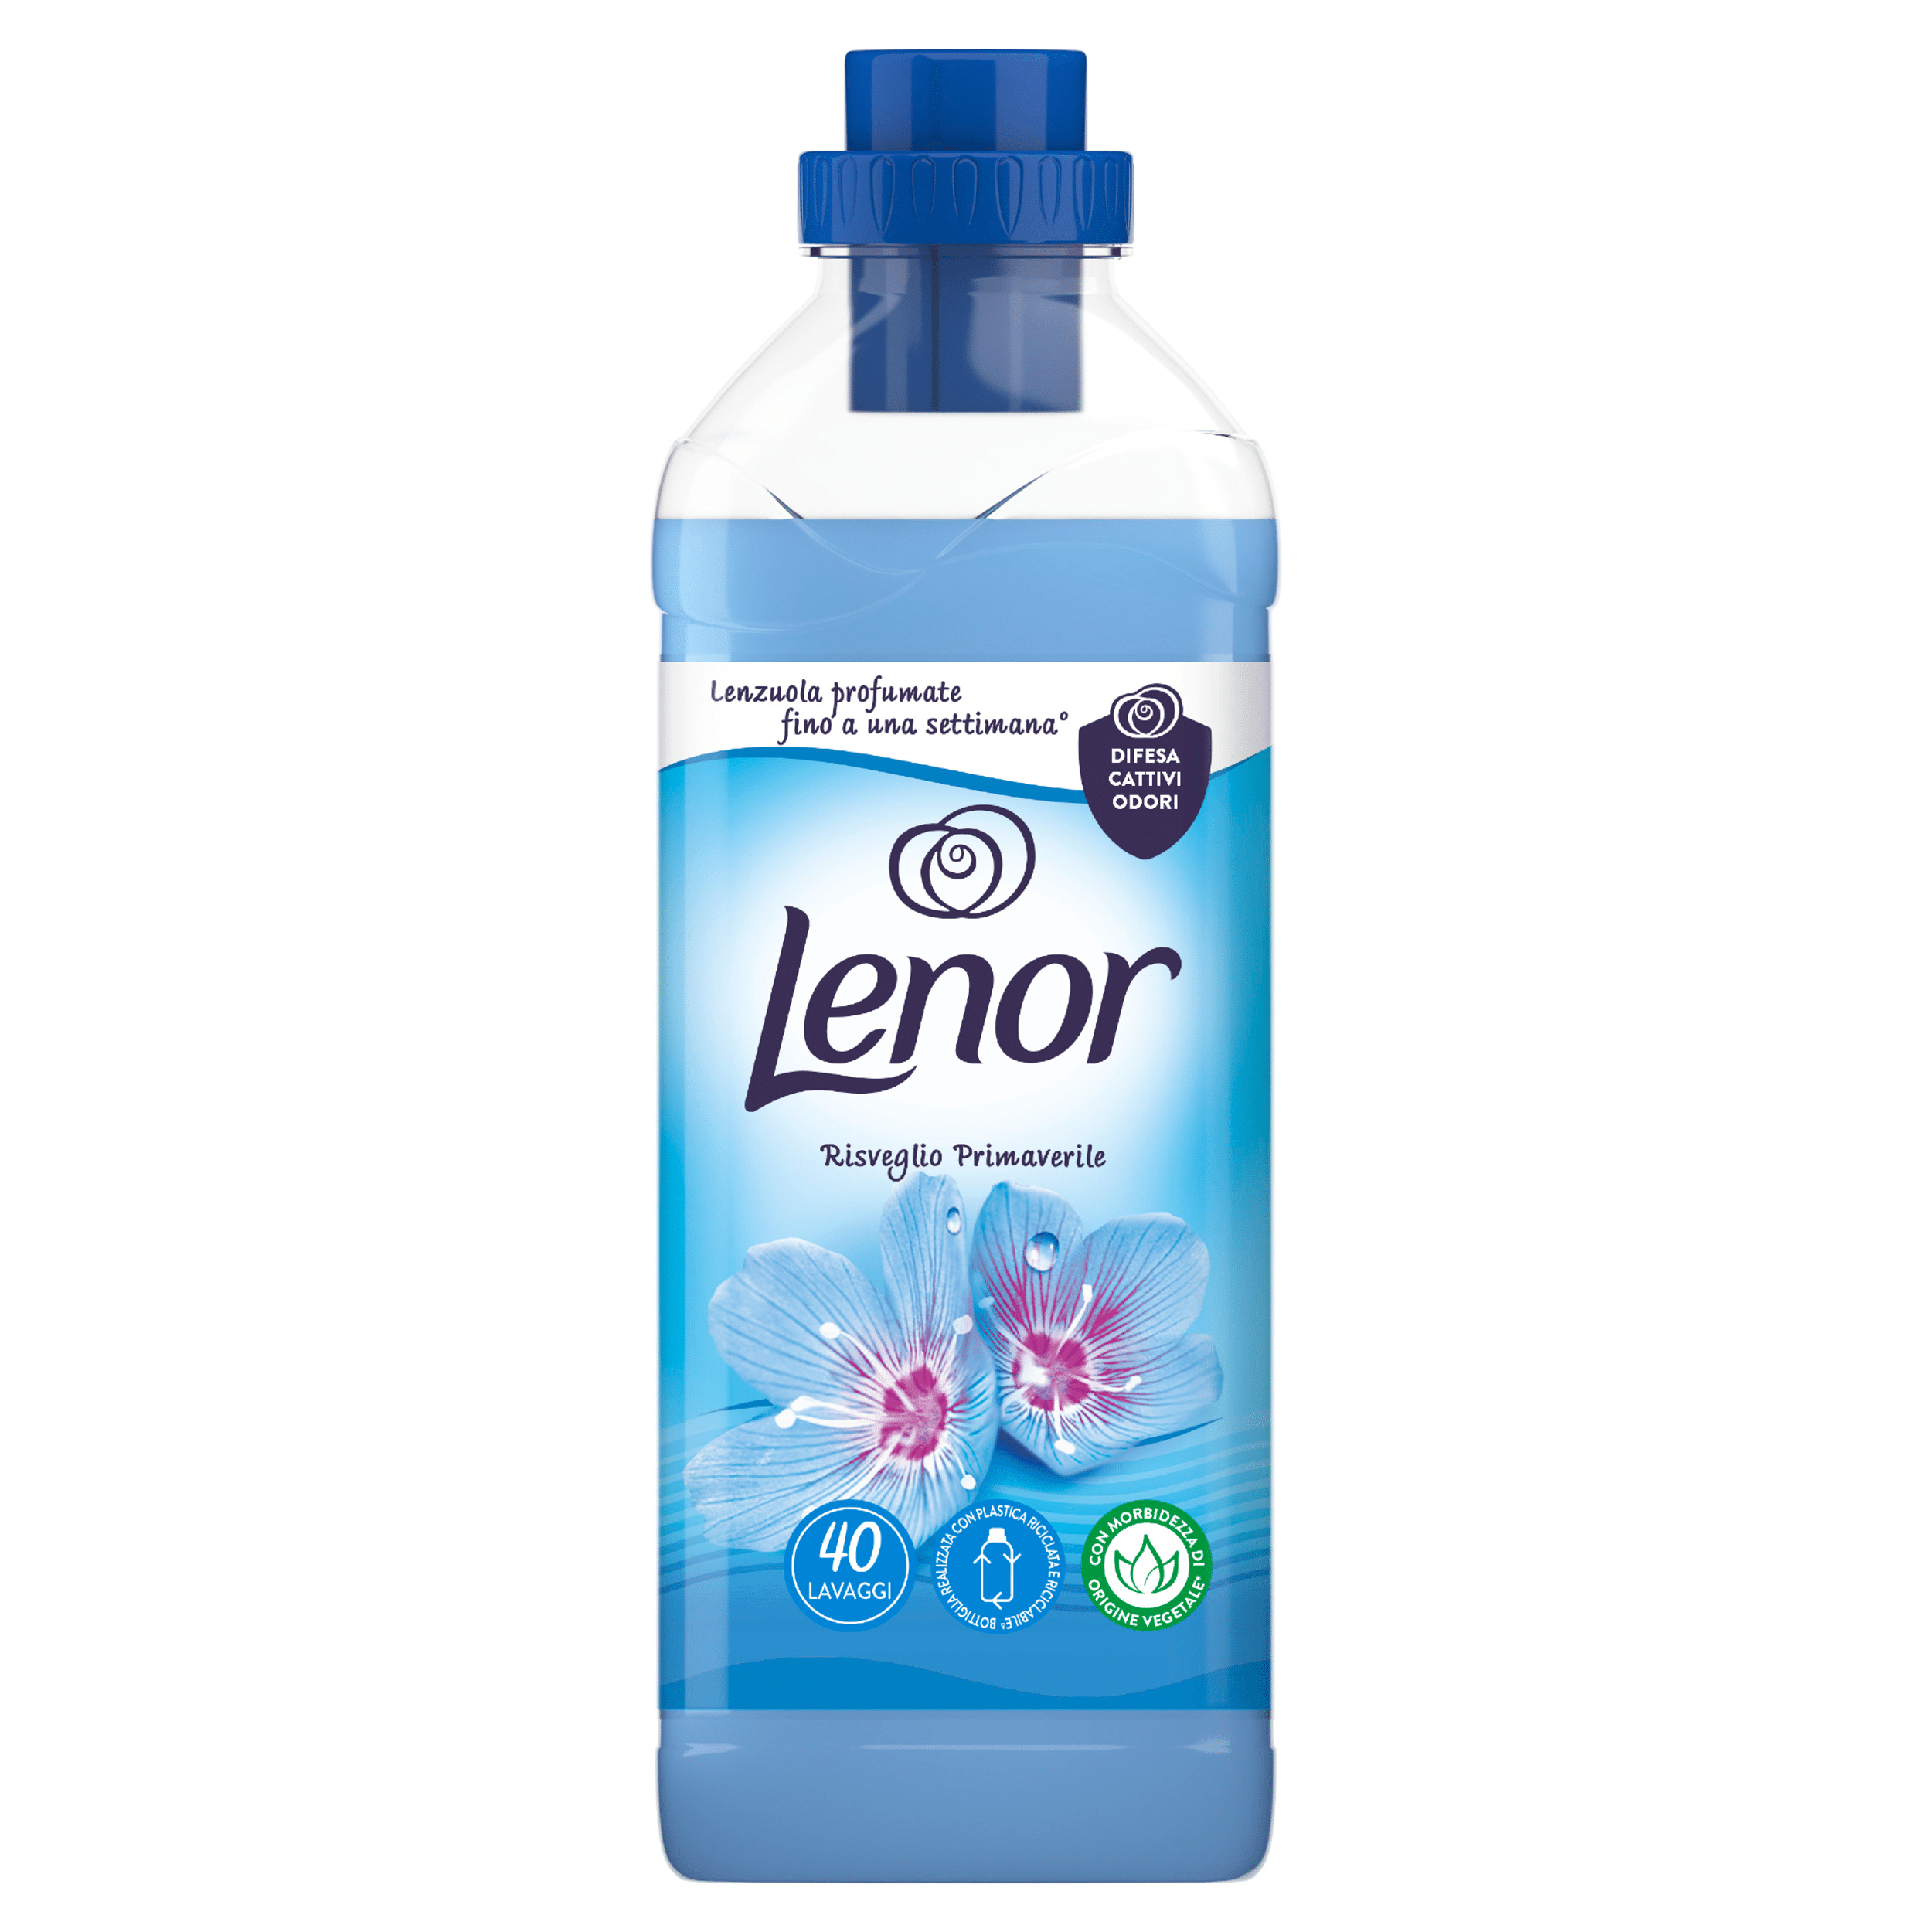 Lenor Spring Softener 40D 840ml